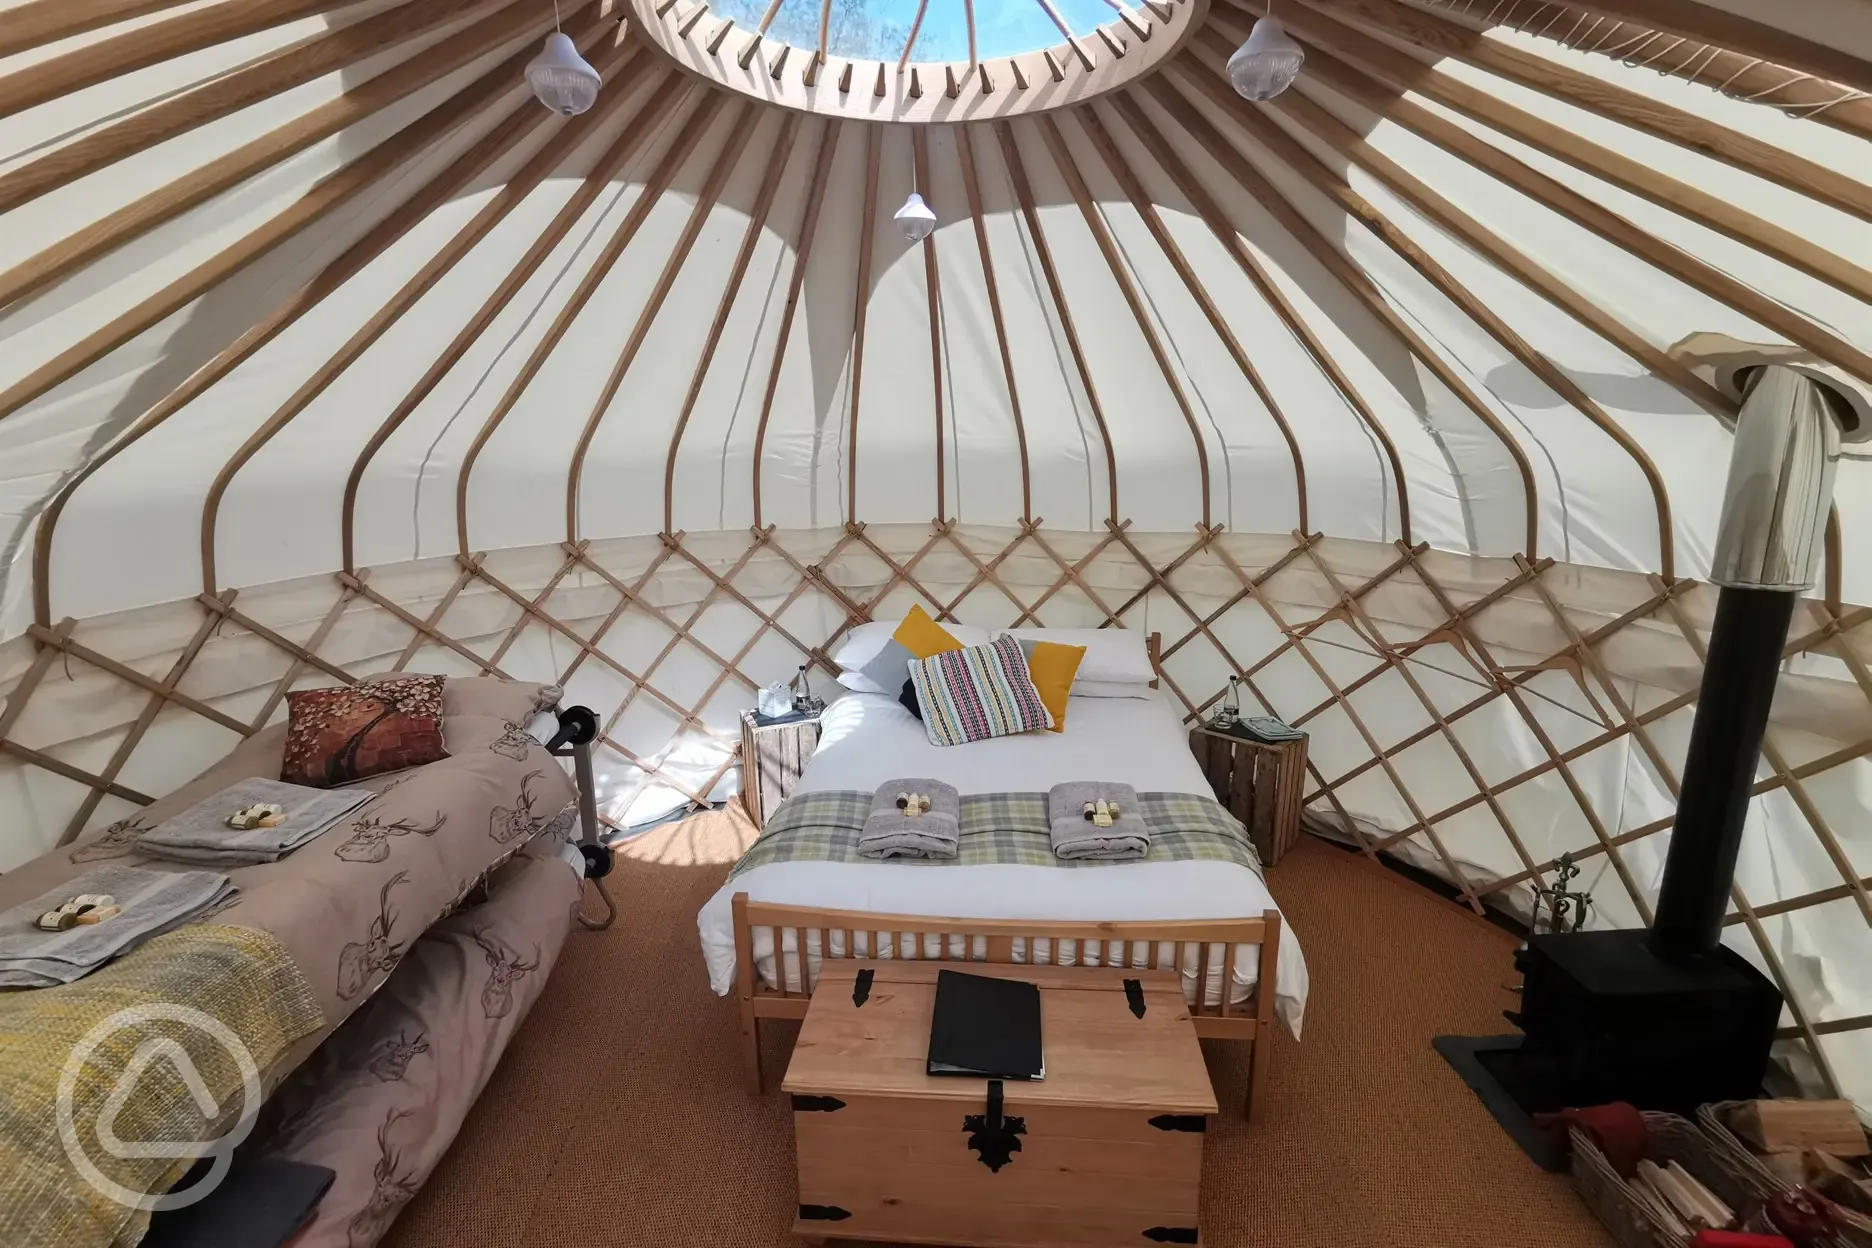 Syke Farm Campsite - Yurt